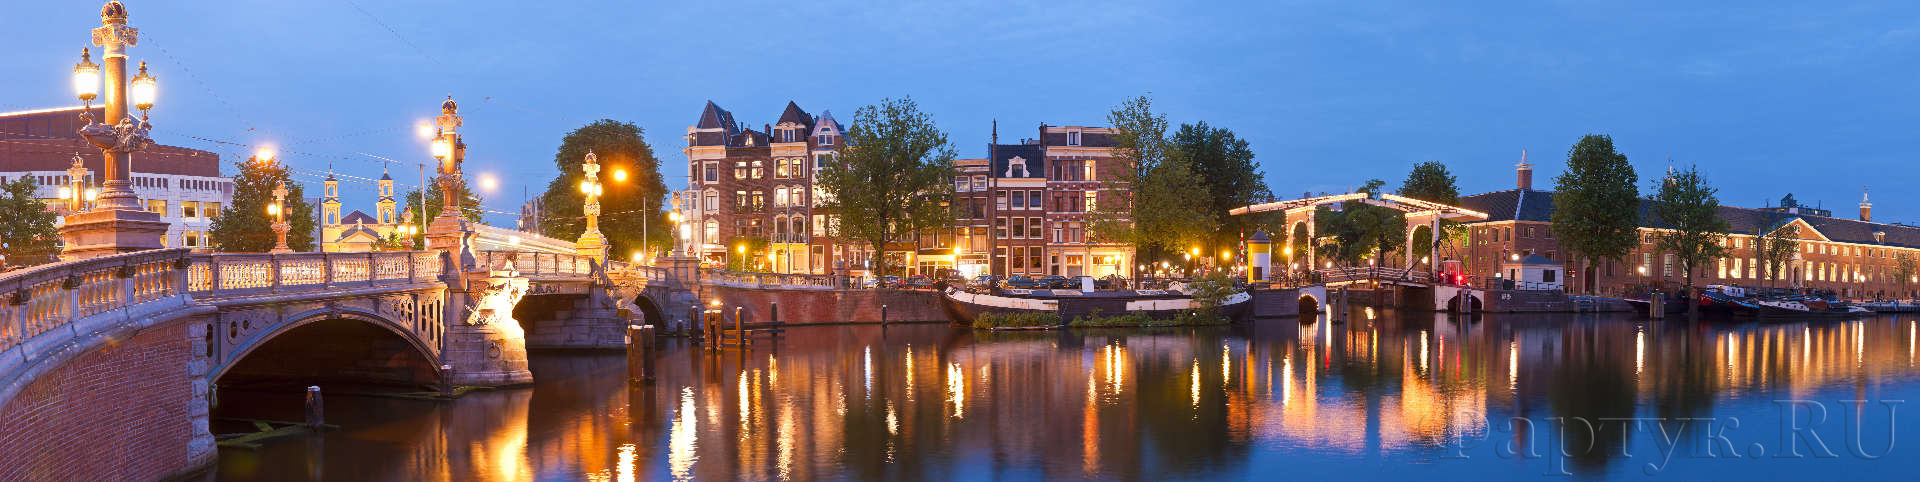 Вечерний мост в Амстердаме